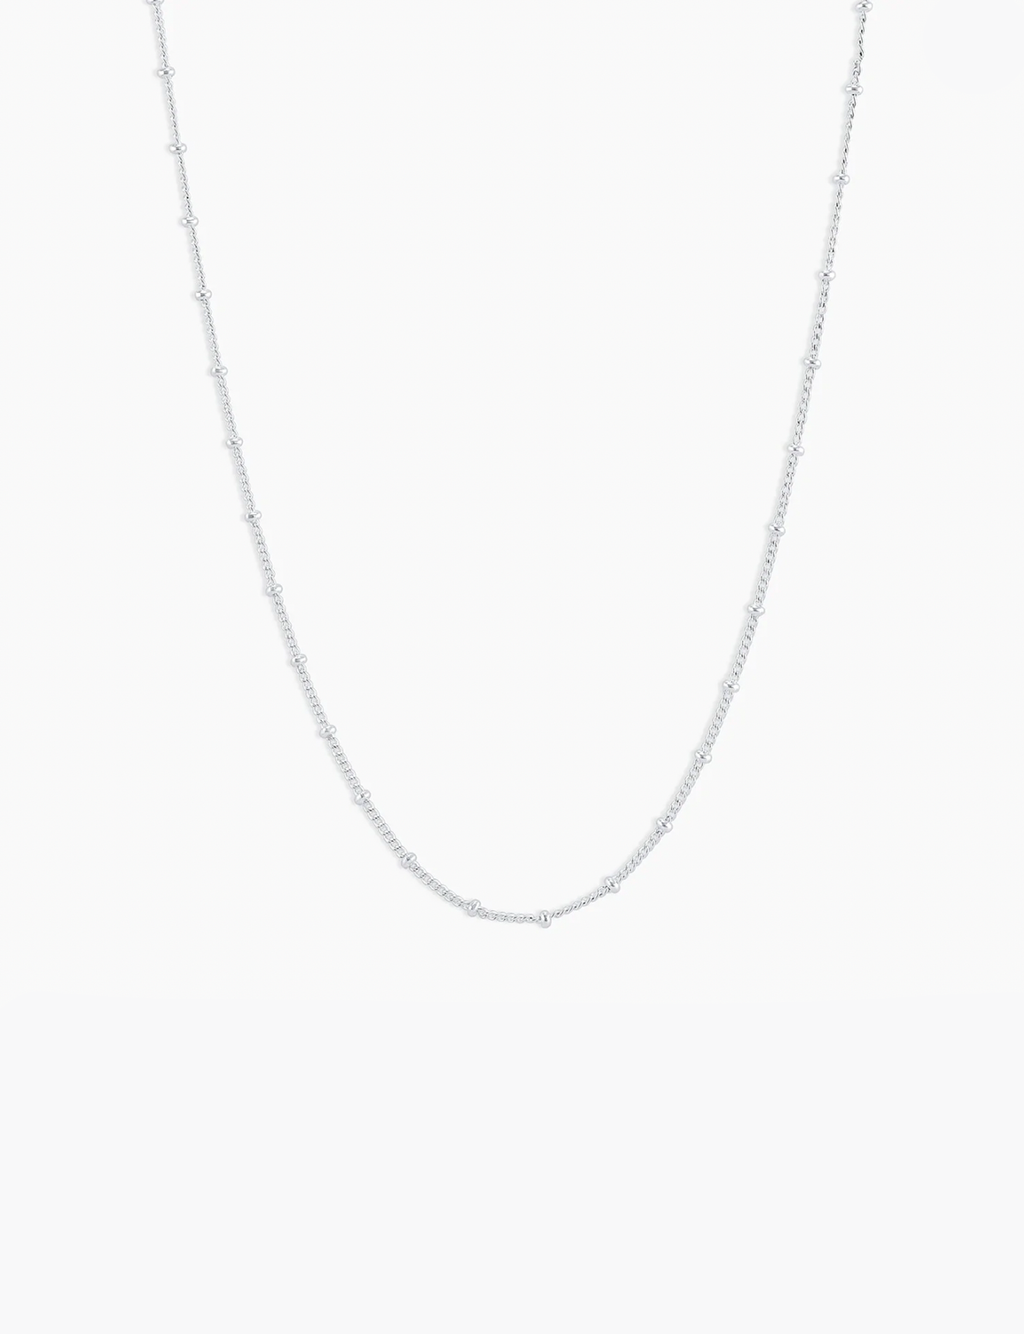 Bali Necklace, Silver